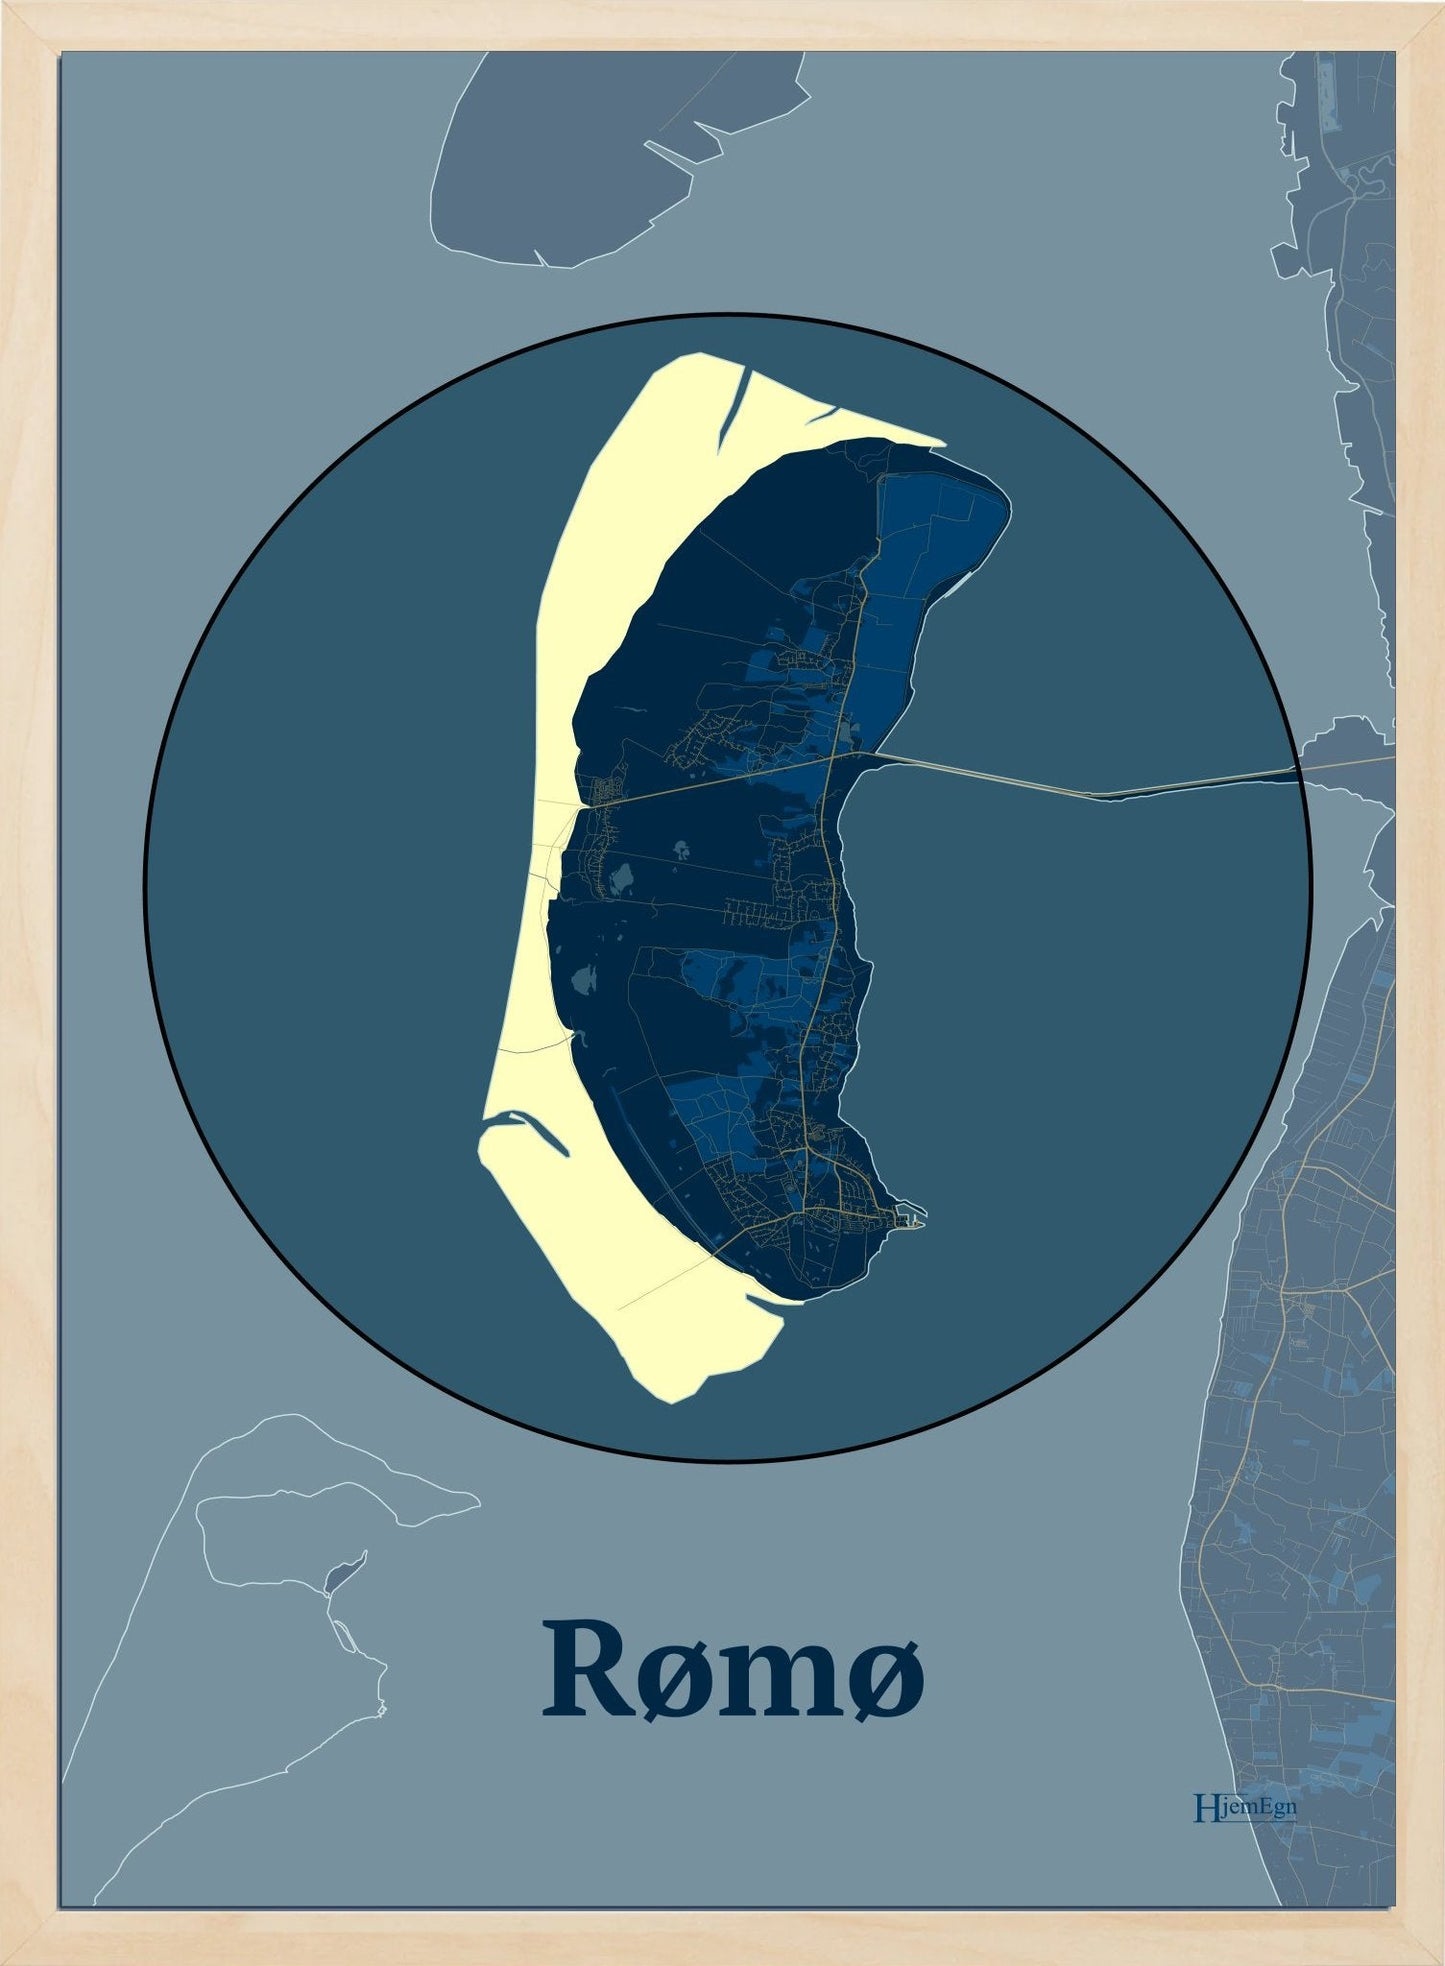 Rømø plakat i farve mørk blå og HjemEgn.dk design centrum. Design ø-kort for Rømø